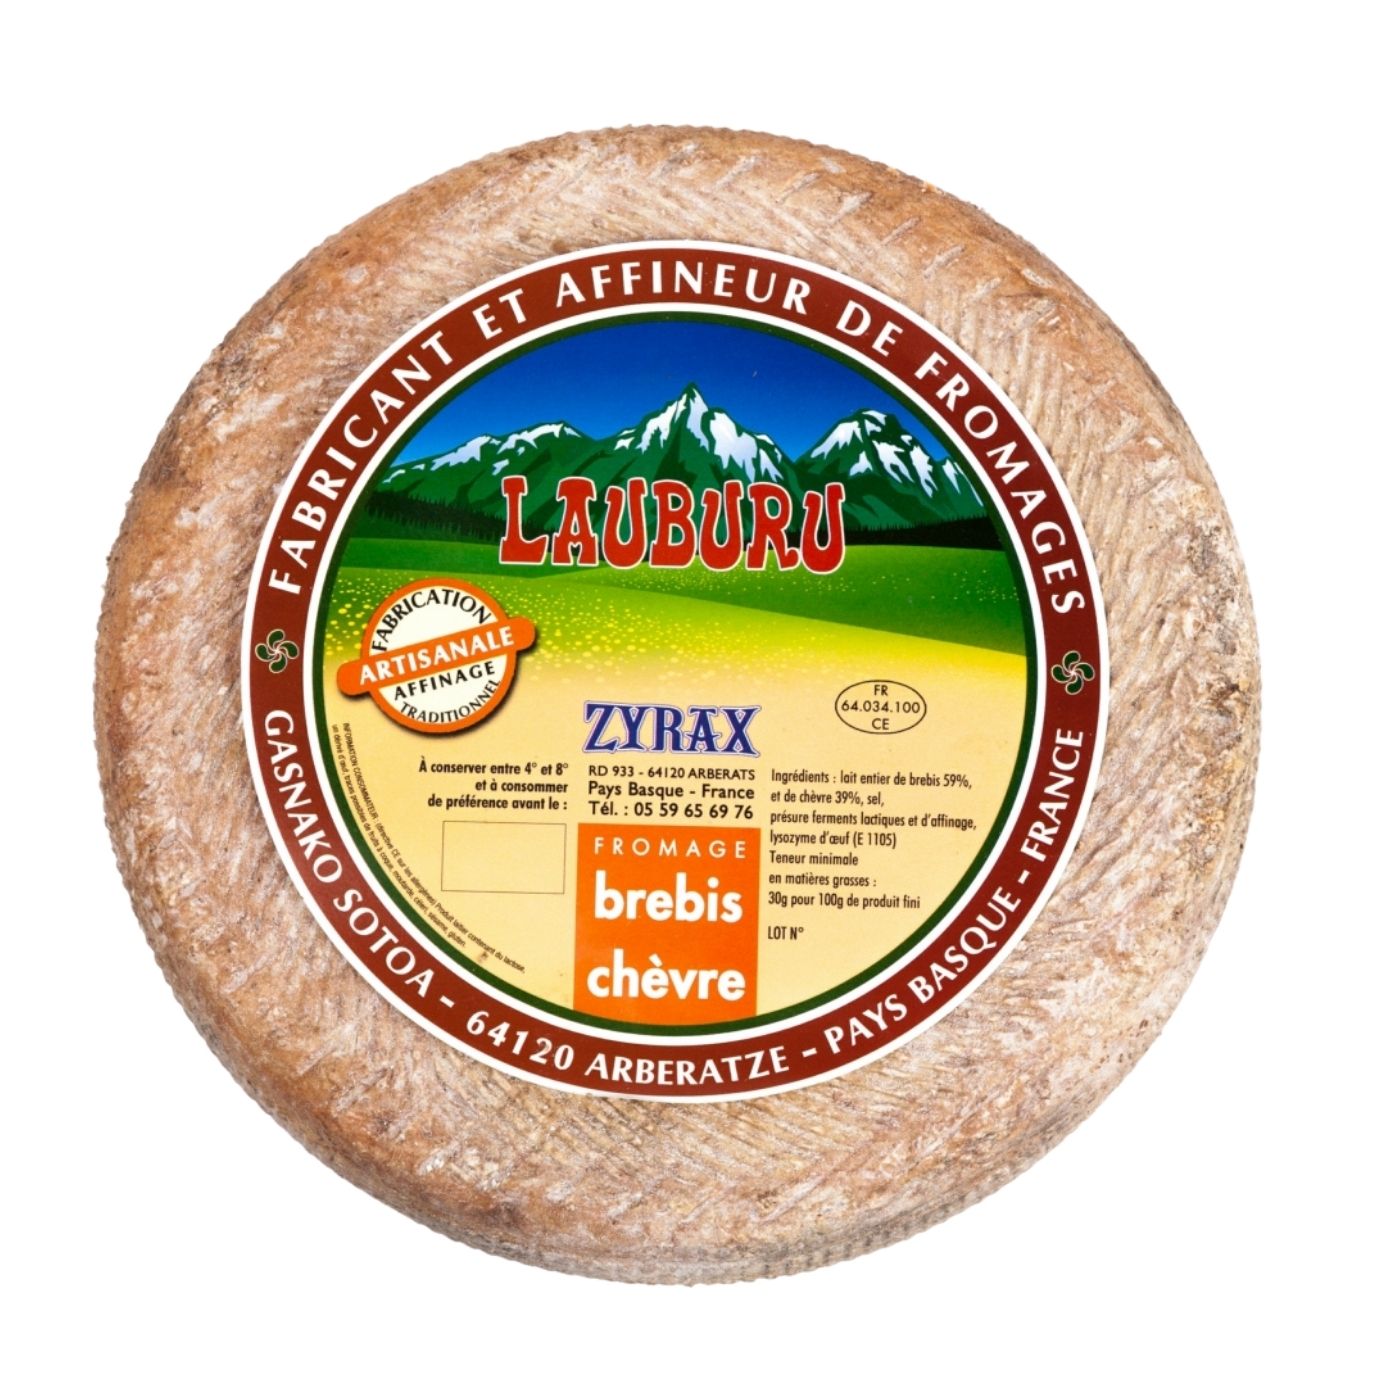 Brebis Chèvre-zyrax fromage-www.luxfood-shop.fr